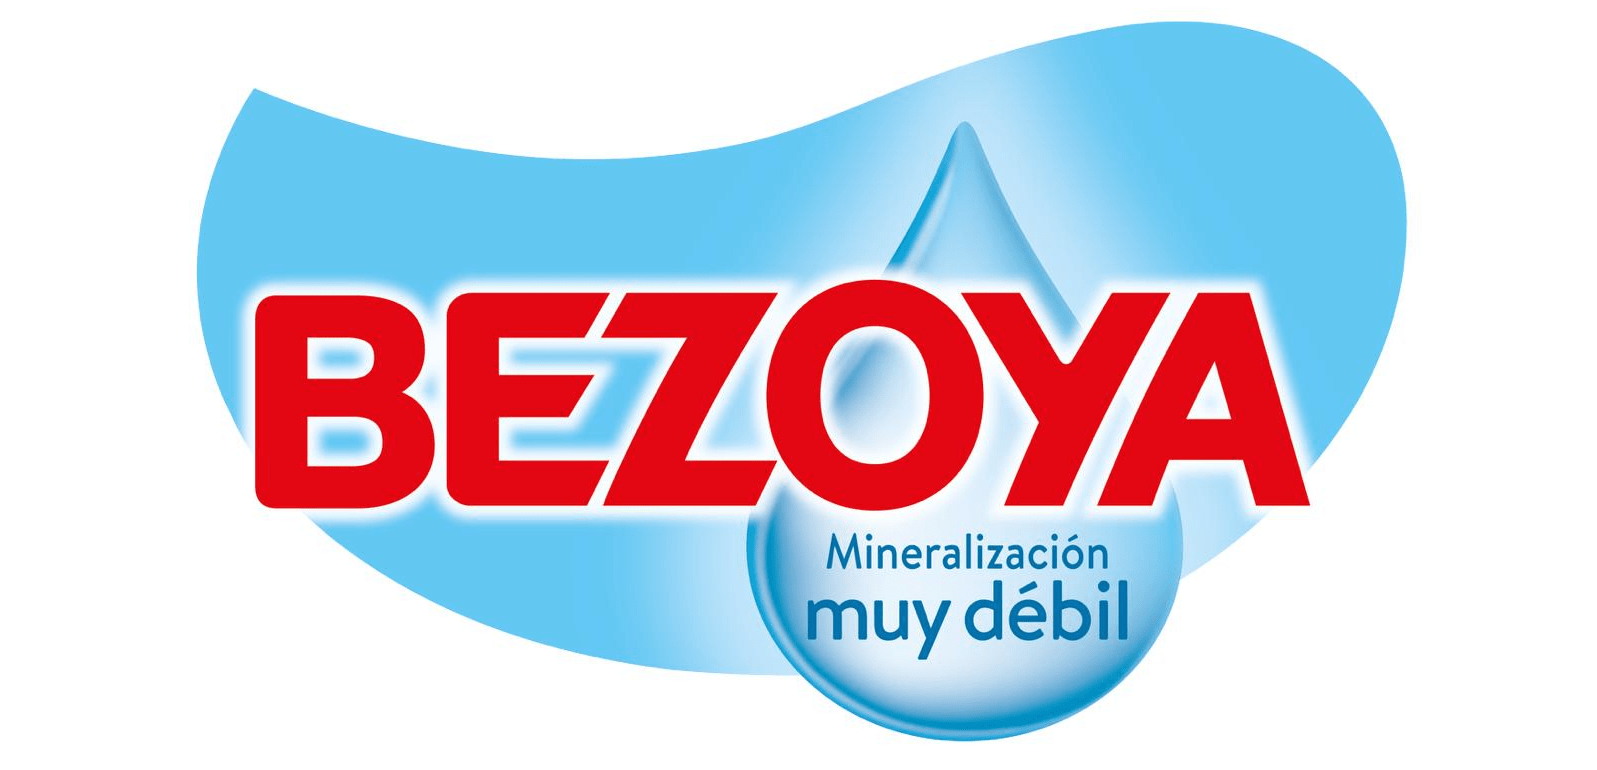 bezoya